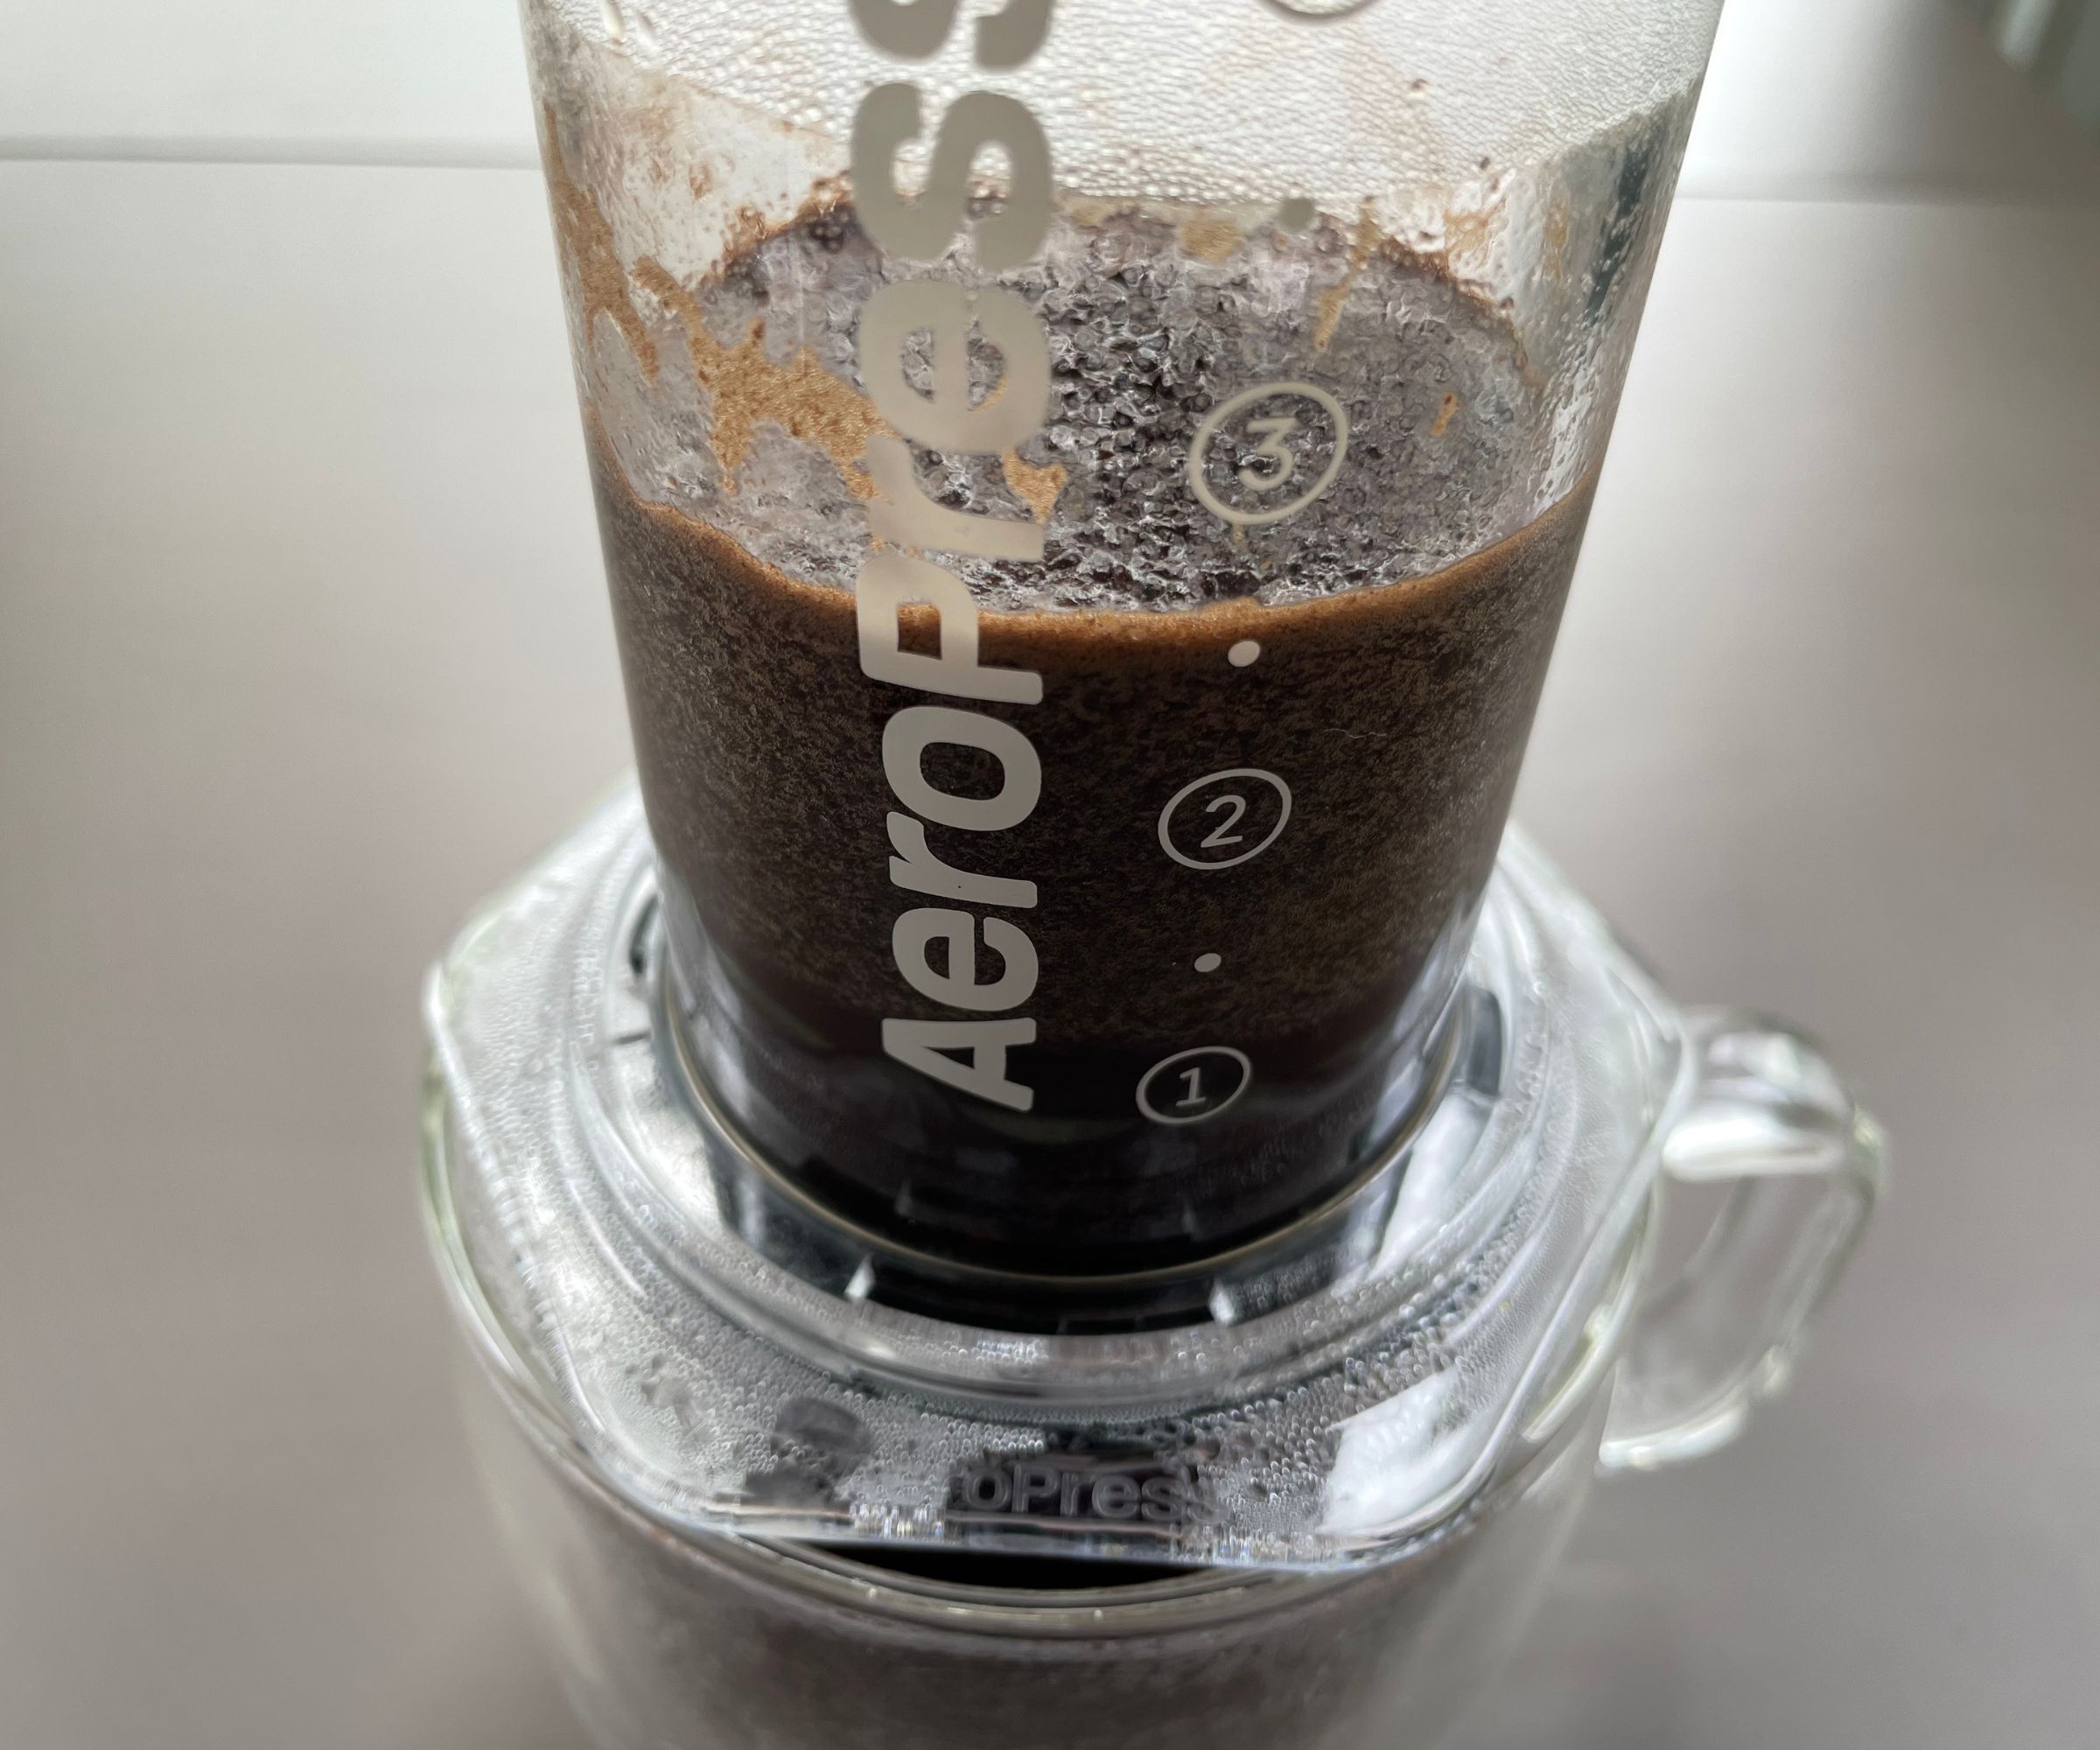 Using the Aeropress to make coffee following The Ultimate AeroPress Recipe